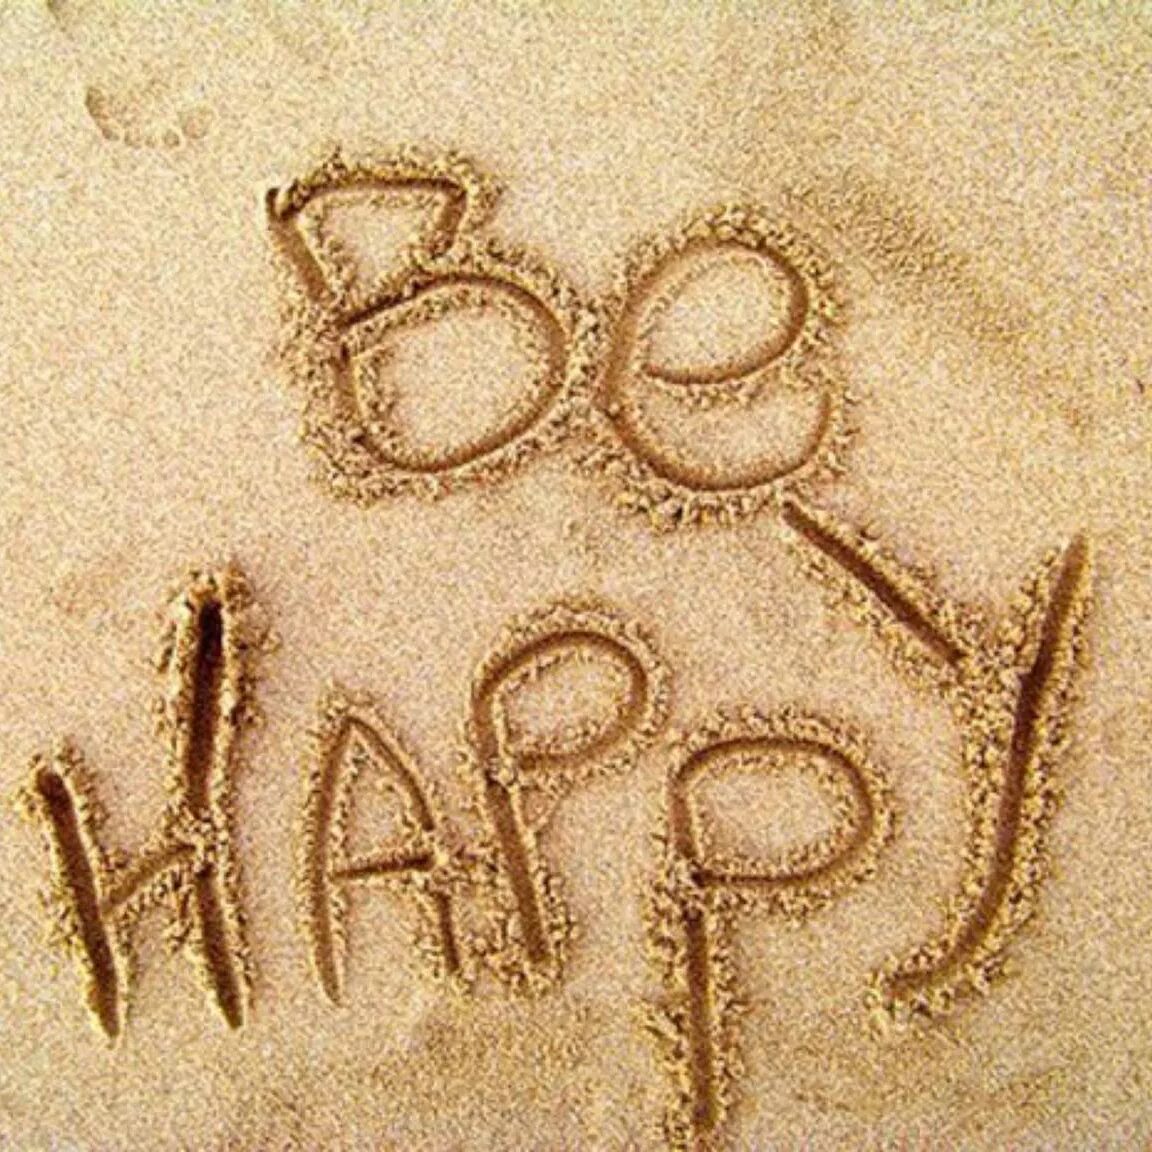 Everybody were happy. Счастье. Счастье есть на песке. Счастье картинки. Счастье есть картинки.